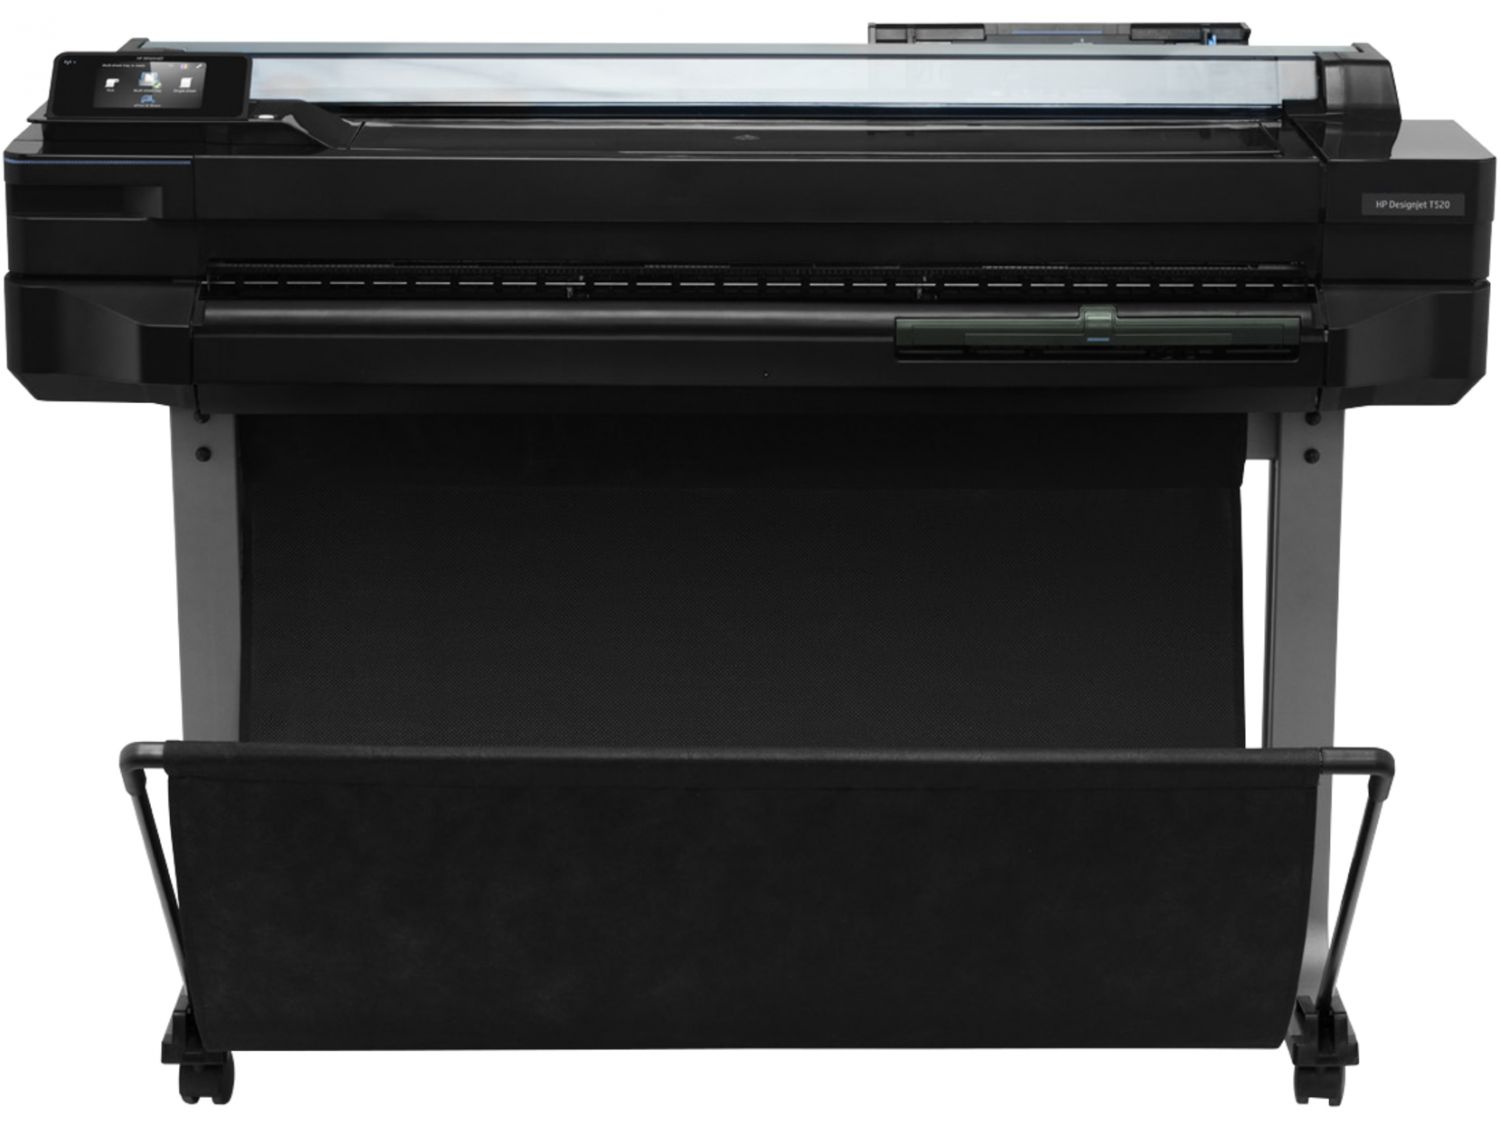 CQ893C - Impresora de gran formato HP Designjet T520 impresora de   Color 2400 x 1200 DPI Inyeccin de tinta trmica A0 (841 x 1189 mm) Ethernet Wifi